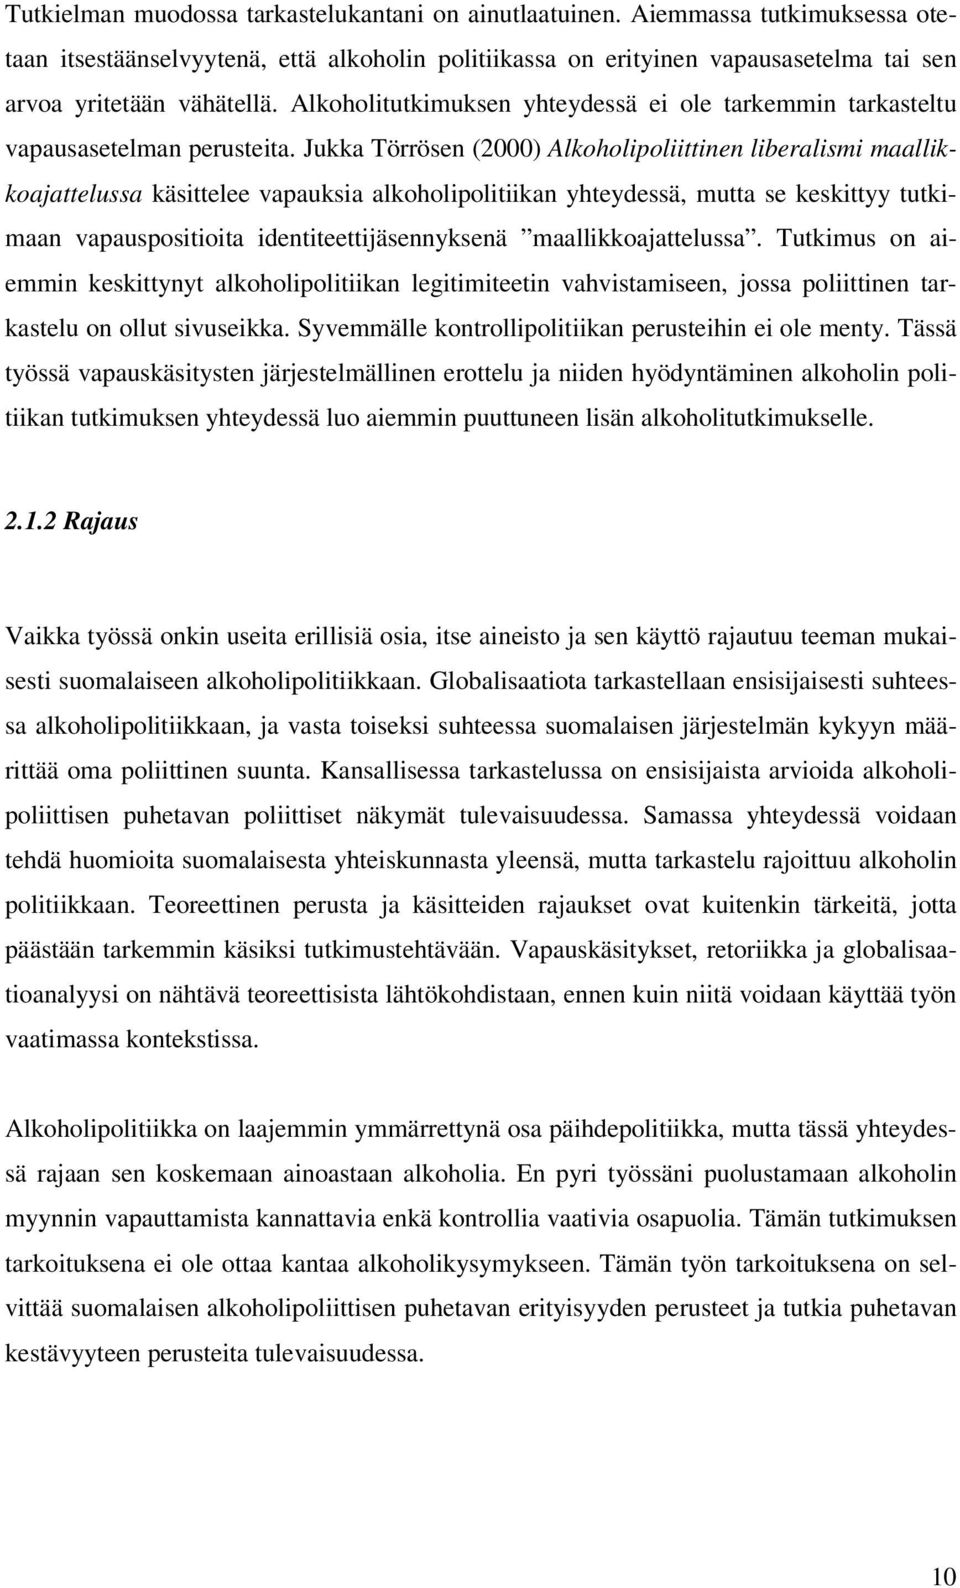 Jukka Törrösen (2000) Alkoholipoliittinen liberalismi maallikkoajattelussa käsittelee vapauksia alkoholipolitiikan yhteydessä, mutta se keskittyy tutkimaan vapauspositioita identiteettijäsennyksenä